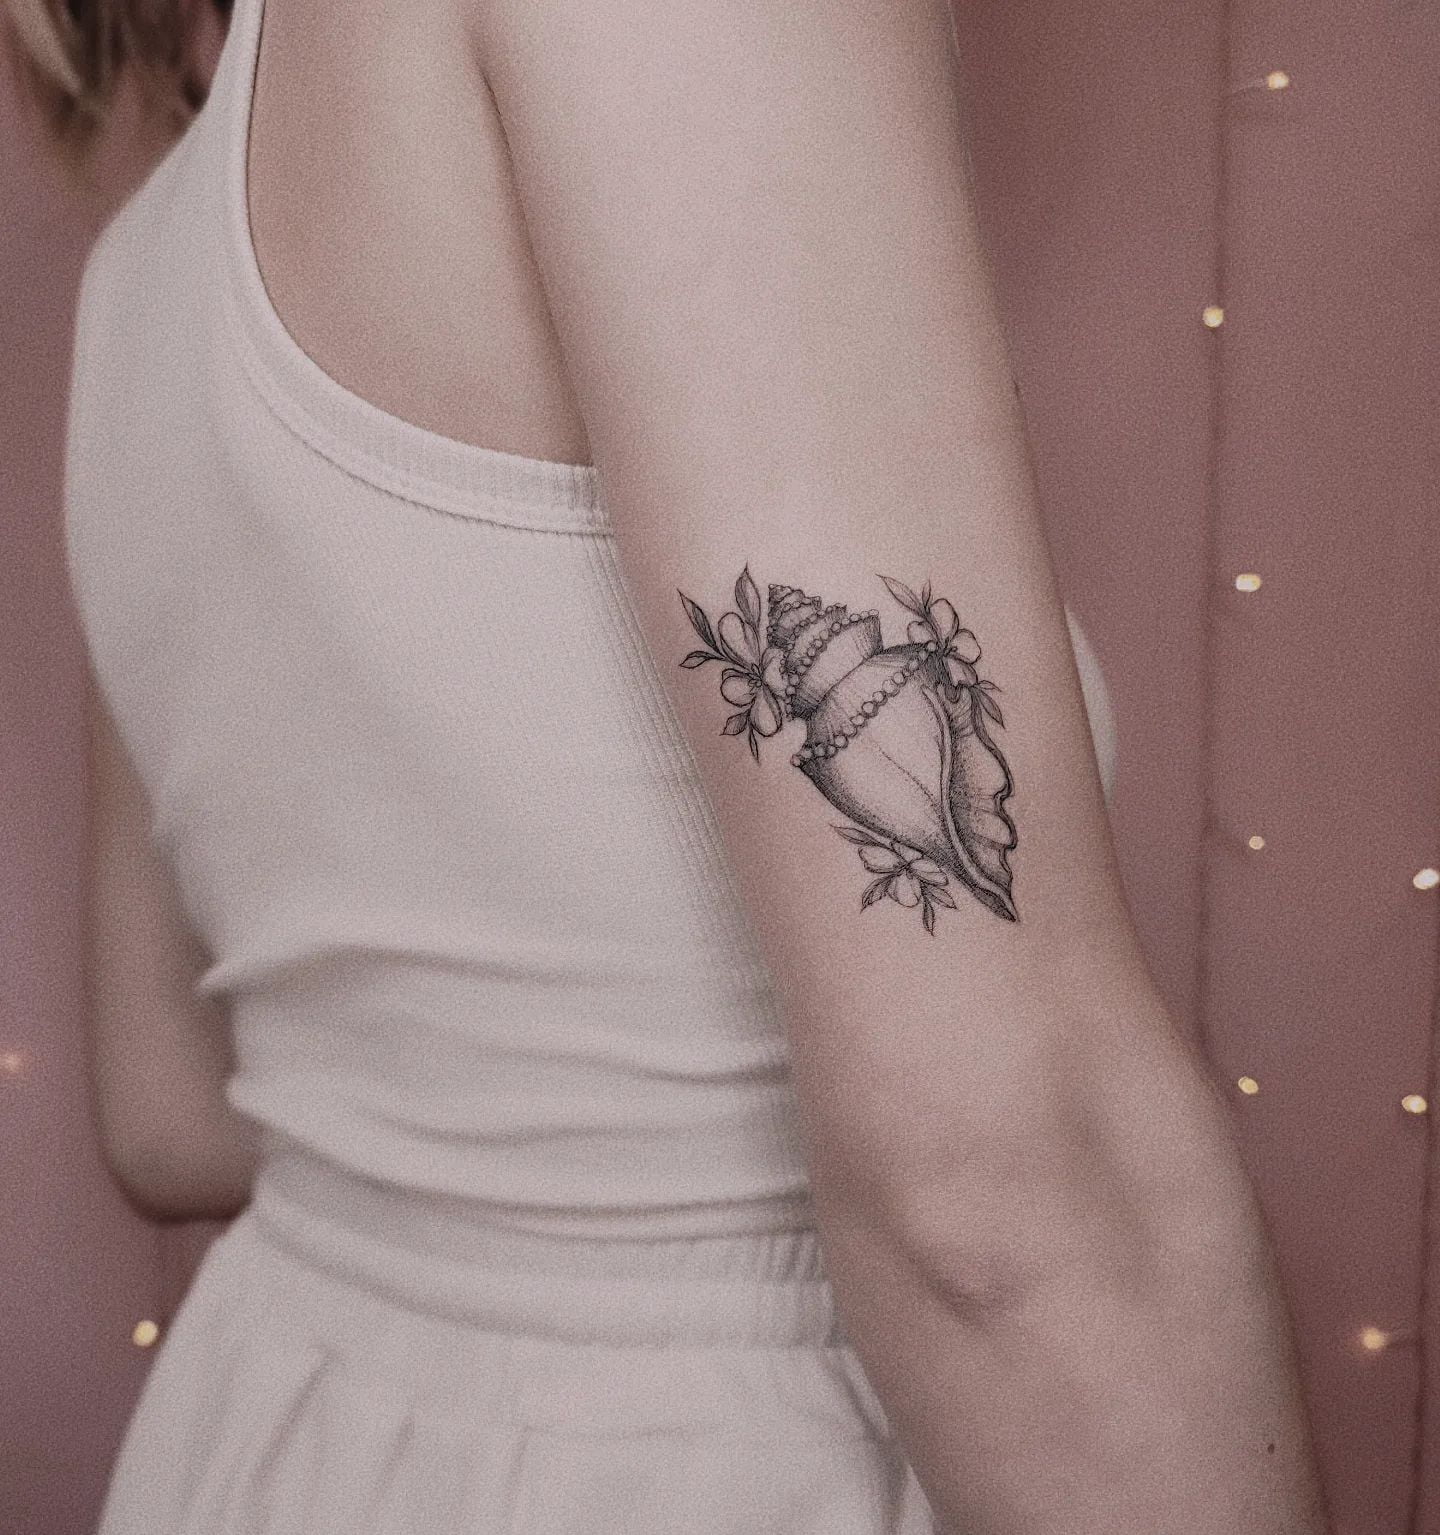 Tatuagem feminina delicada 201